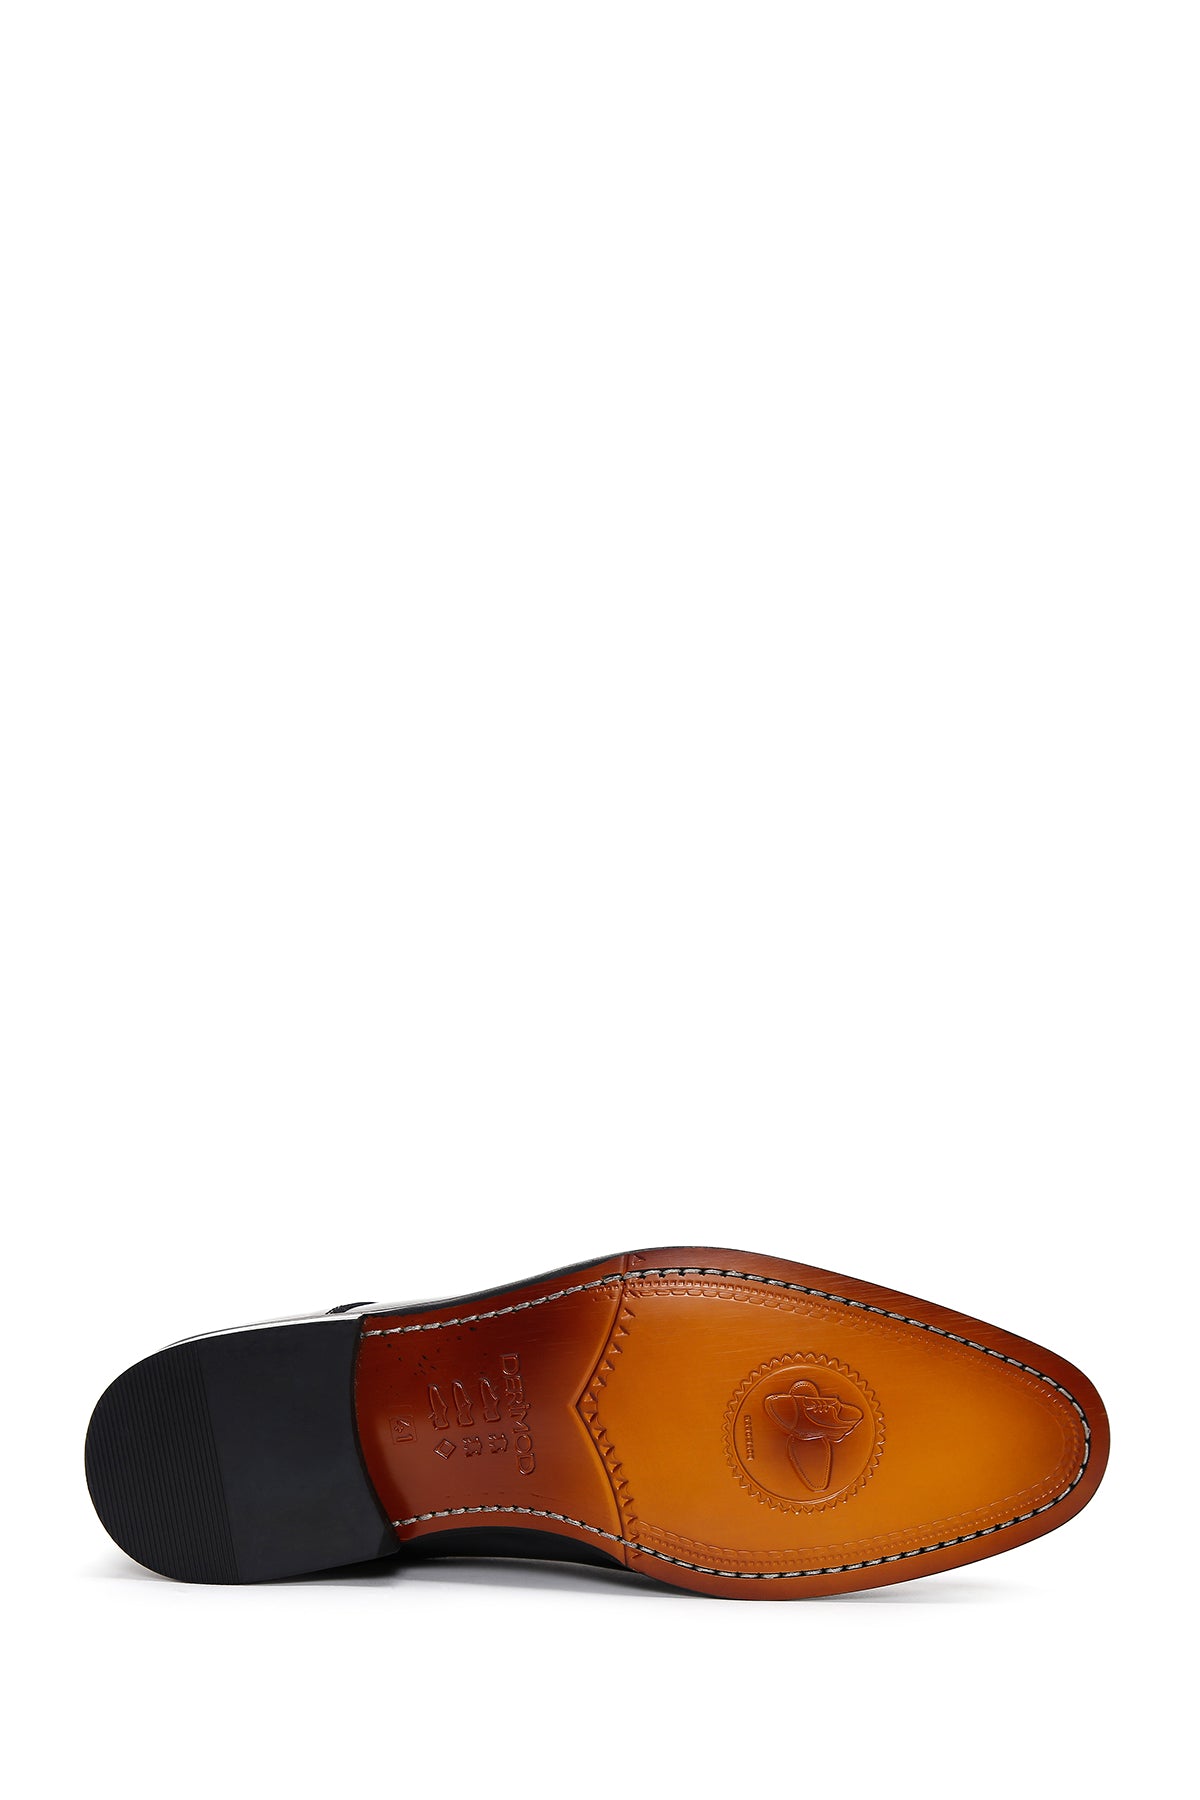 Erkek Siyah Bağcıklı Rugan Deri Klasik Ayakkabı